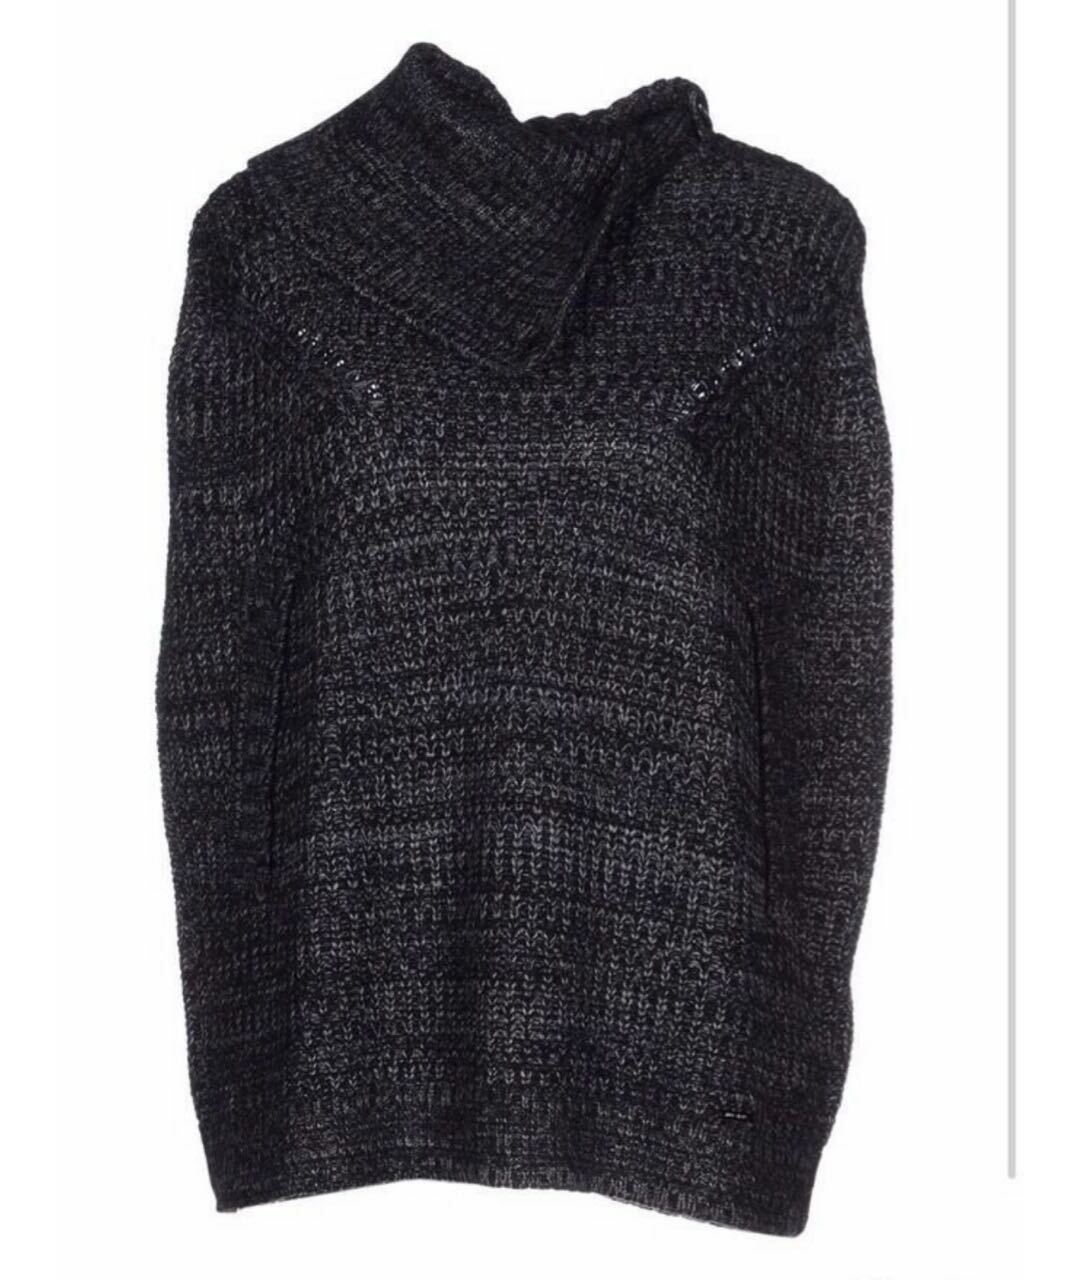 LIU JO Антрацитовый шерстяной джемпер / свитер, фото 1